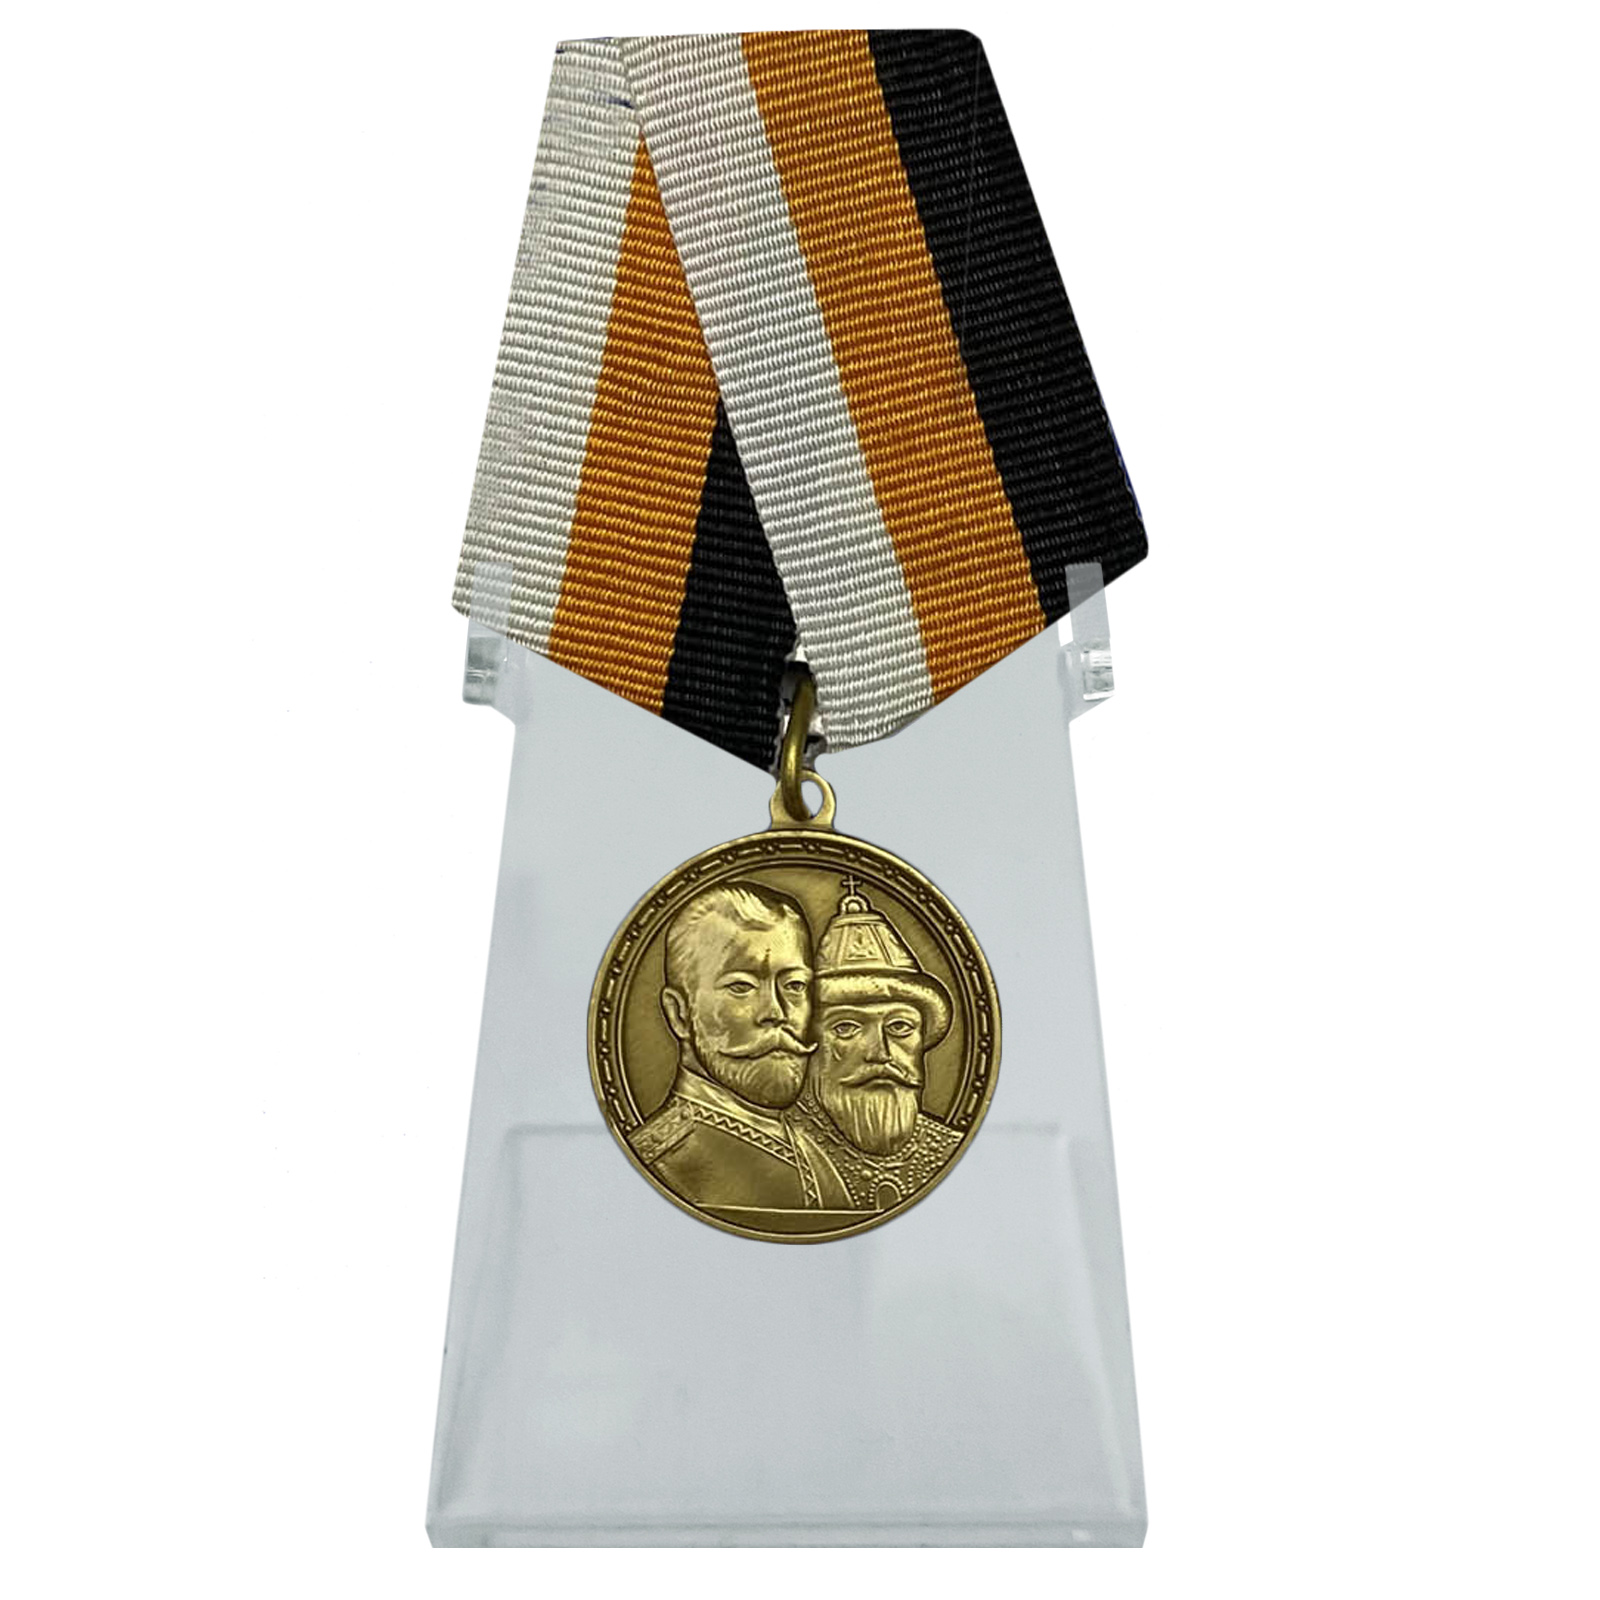 Медаль "В память 300-летия царствования дома Романовых" на подставке